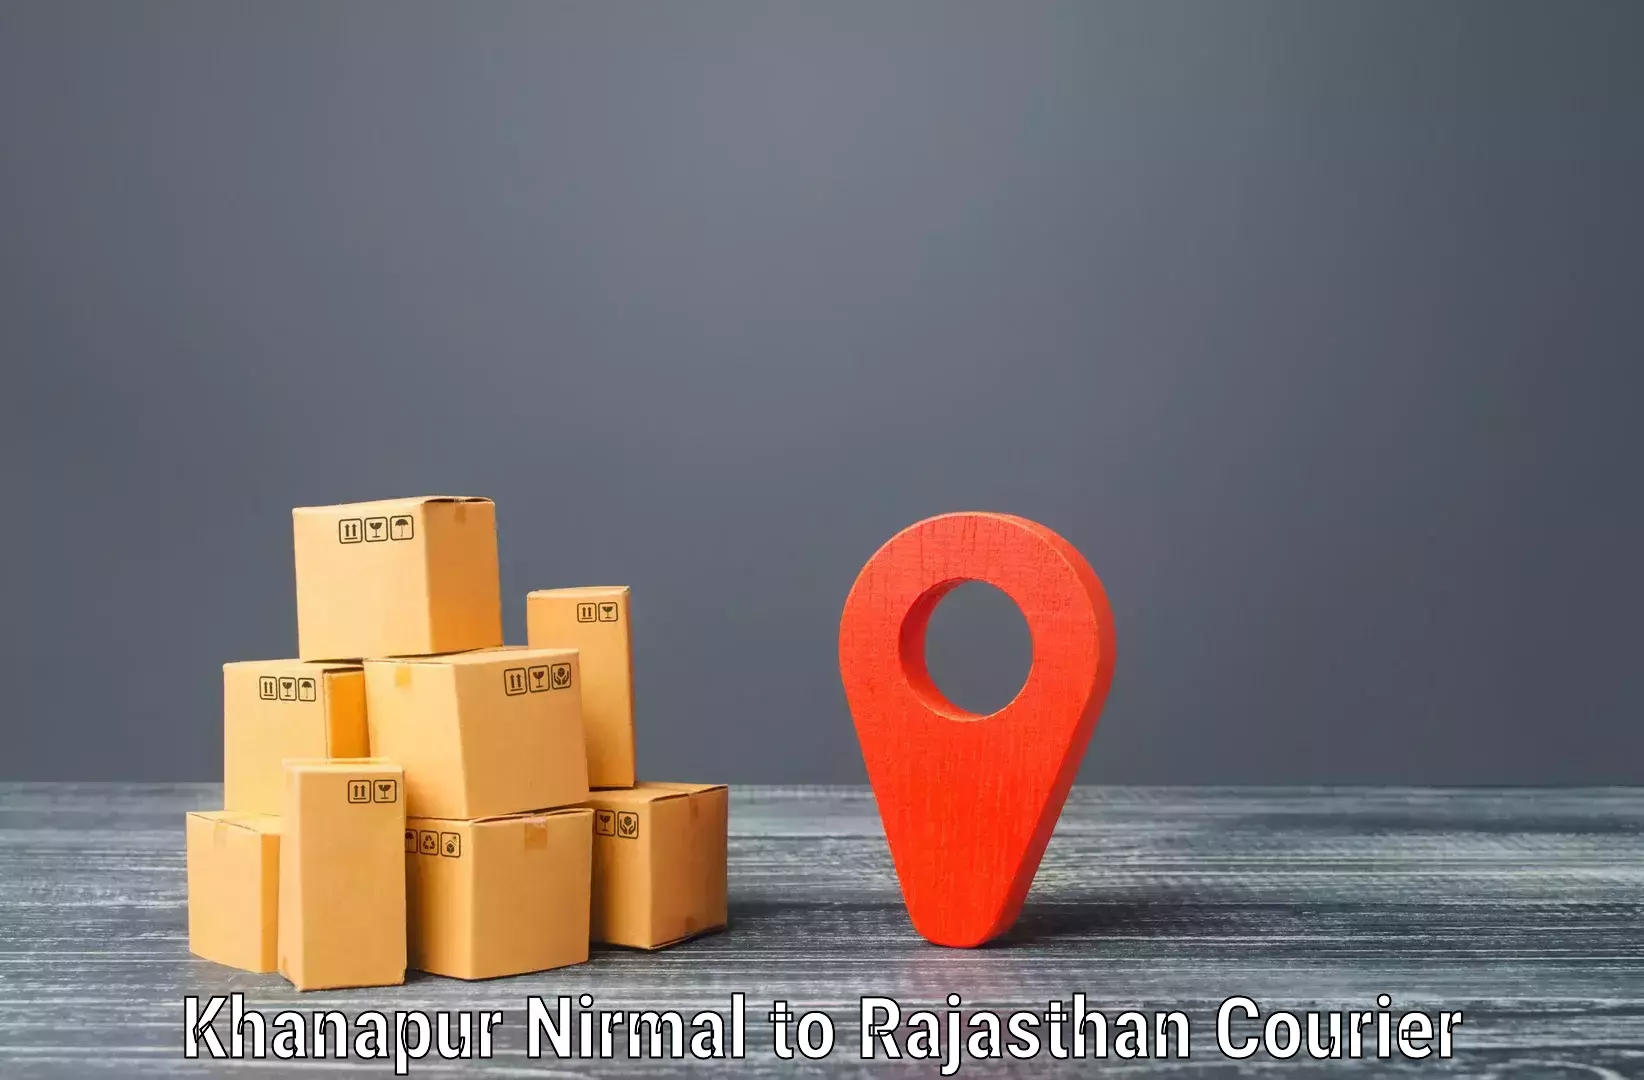 Supply chain delivery Khanapur Nirmal to Raila